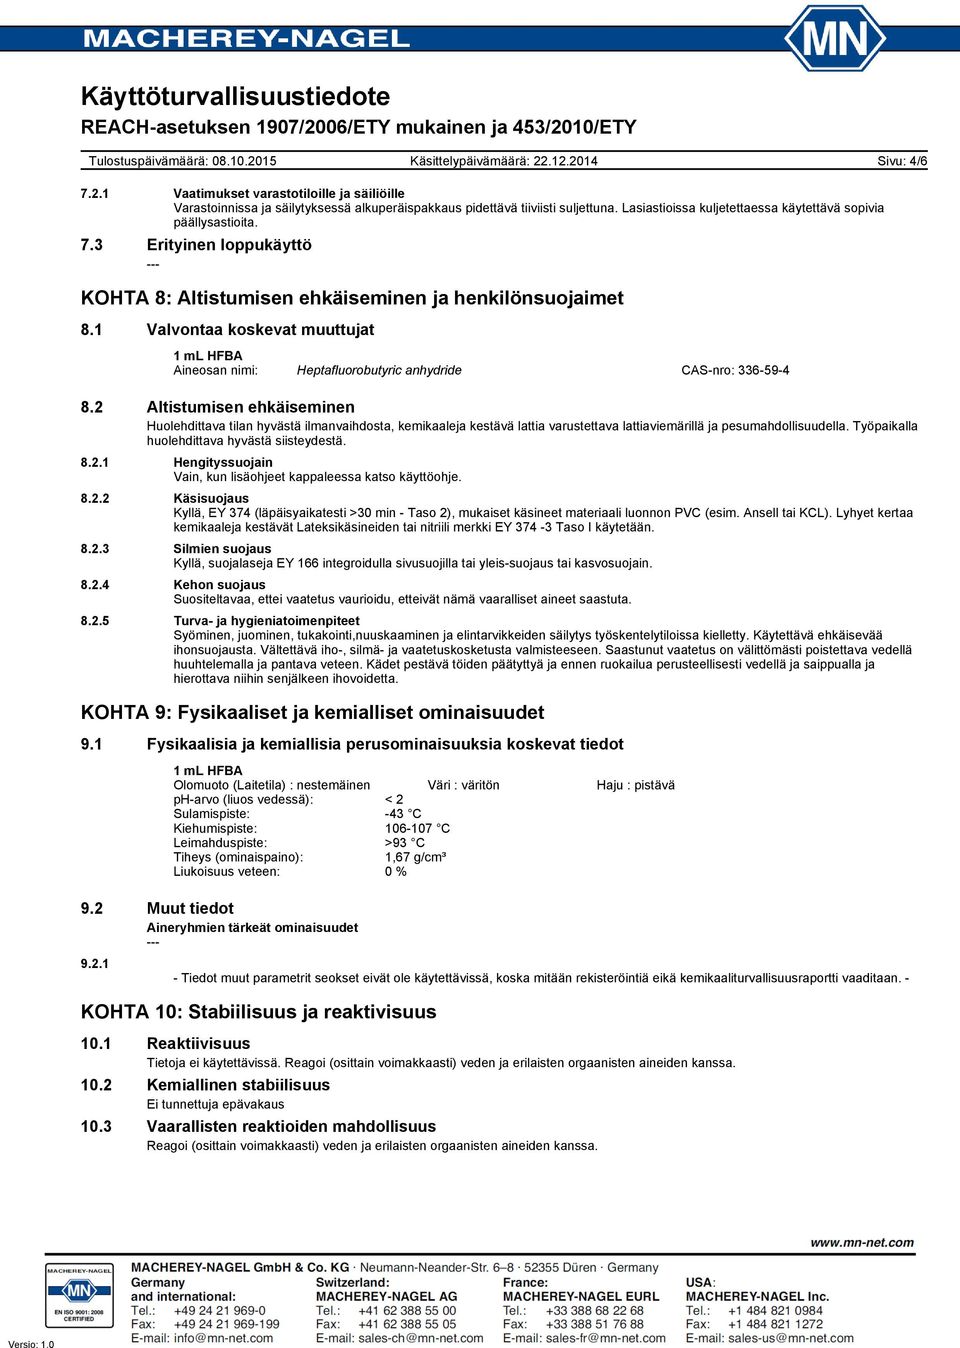 1 Valvontaa koskevat muuttujat Aineosan nimi: Heptafluorobutyric anhydride CAS-nro: 336-59-4 8.